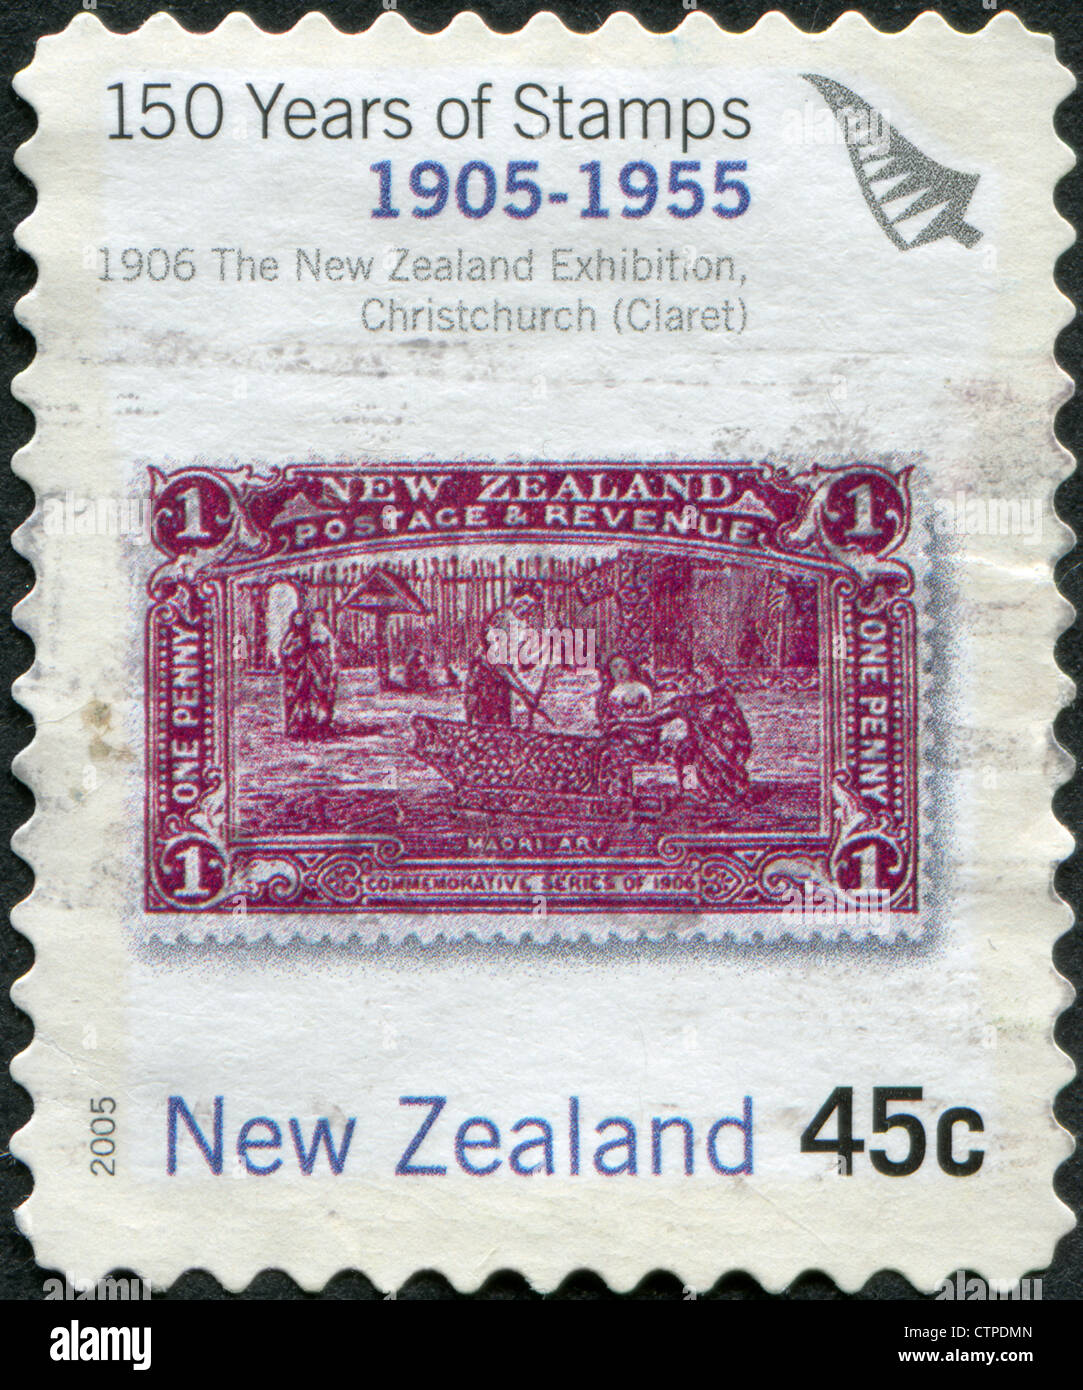 Timbres-poste imprimés en Nouvelle-Zélande, est dédiée à la célébration du 150e anniversaire des timbres-NZ, montre l'art maori, vers 2005 Banque D'Images